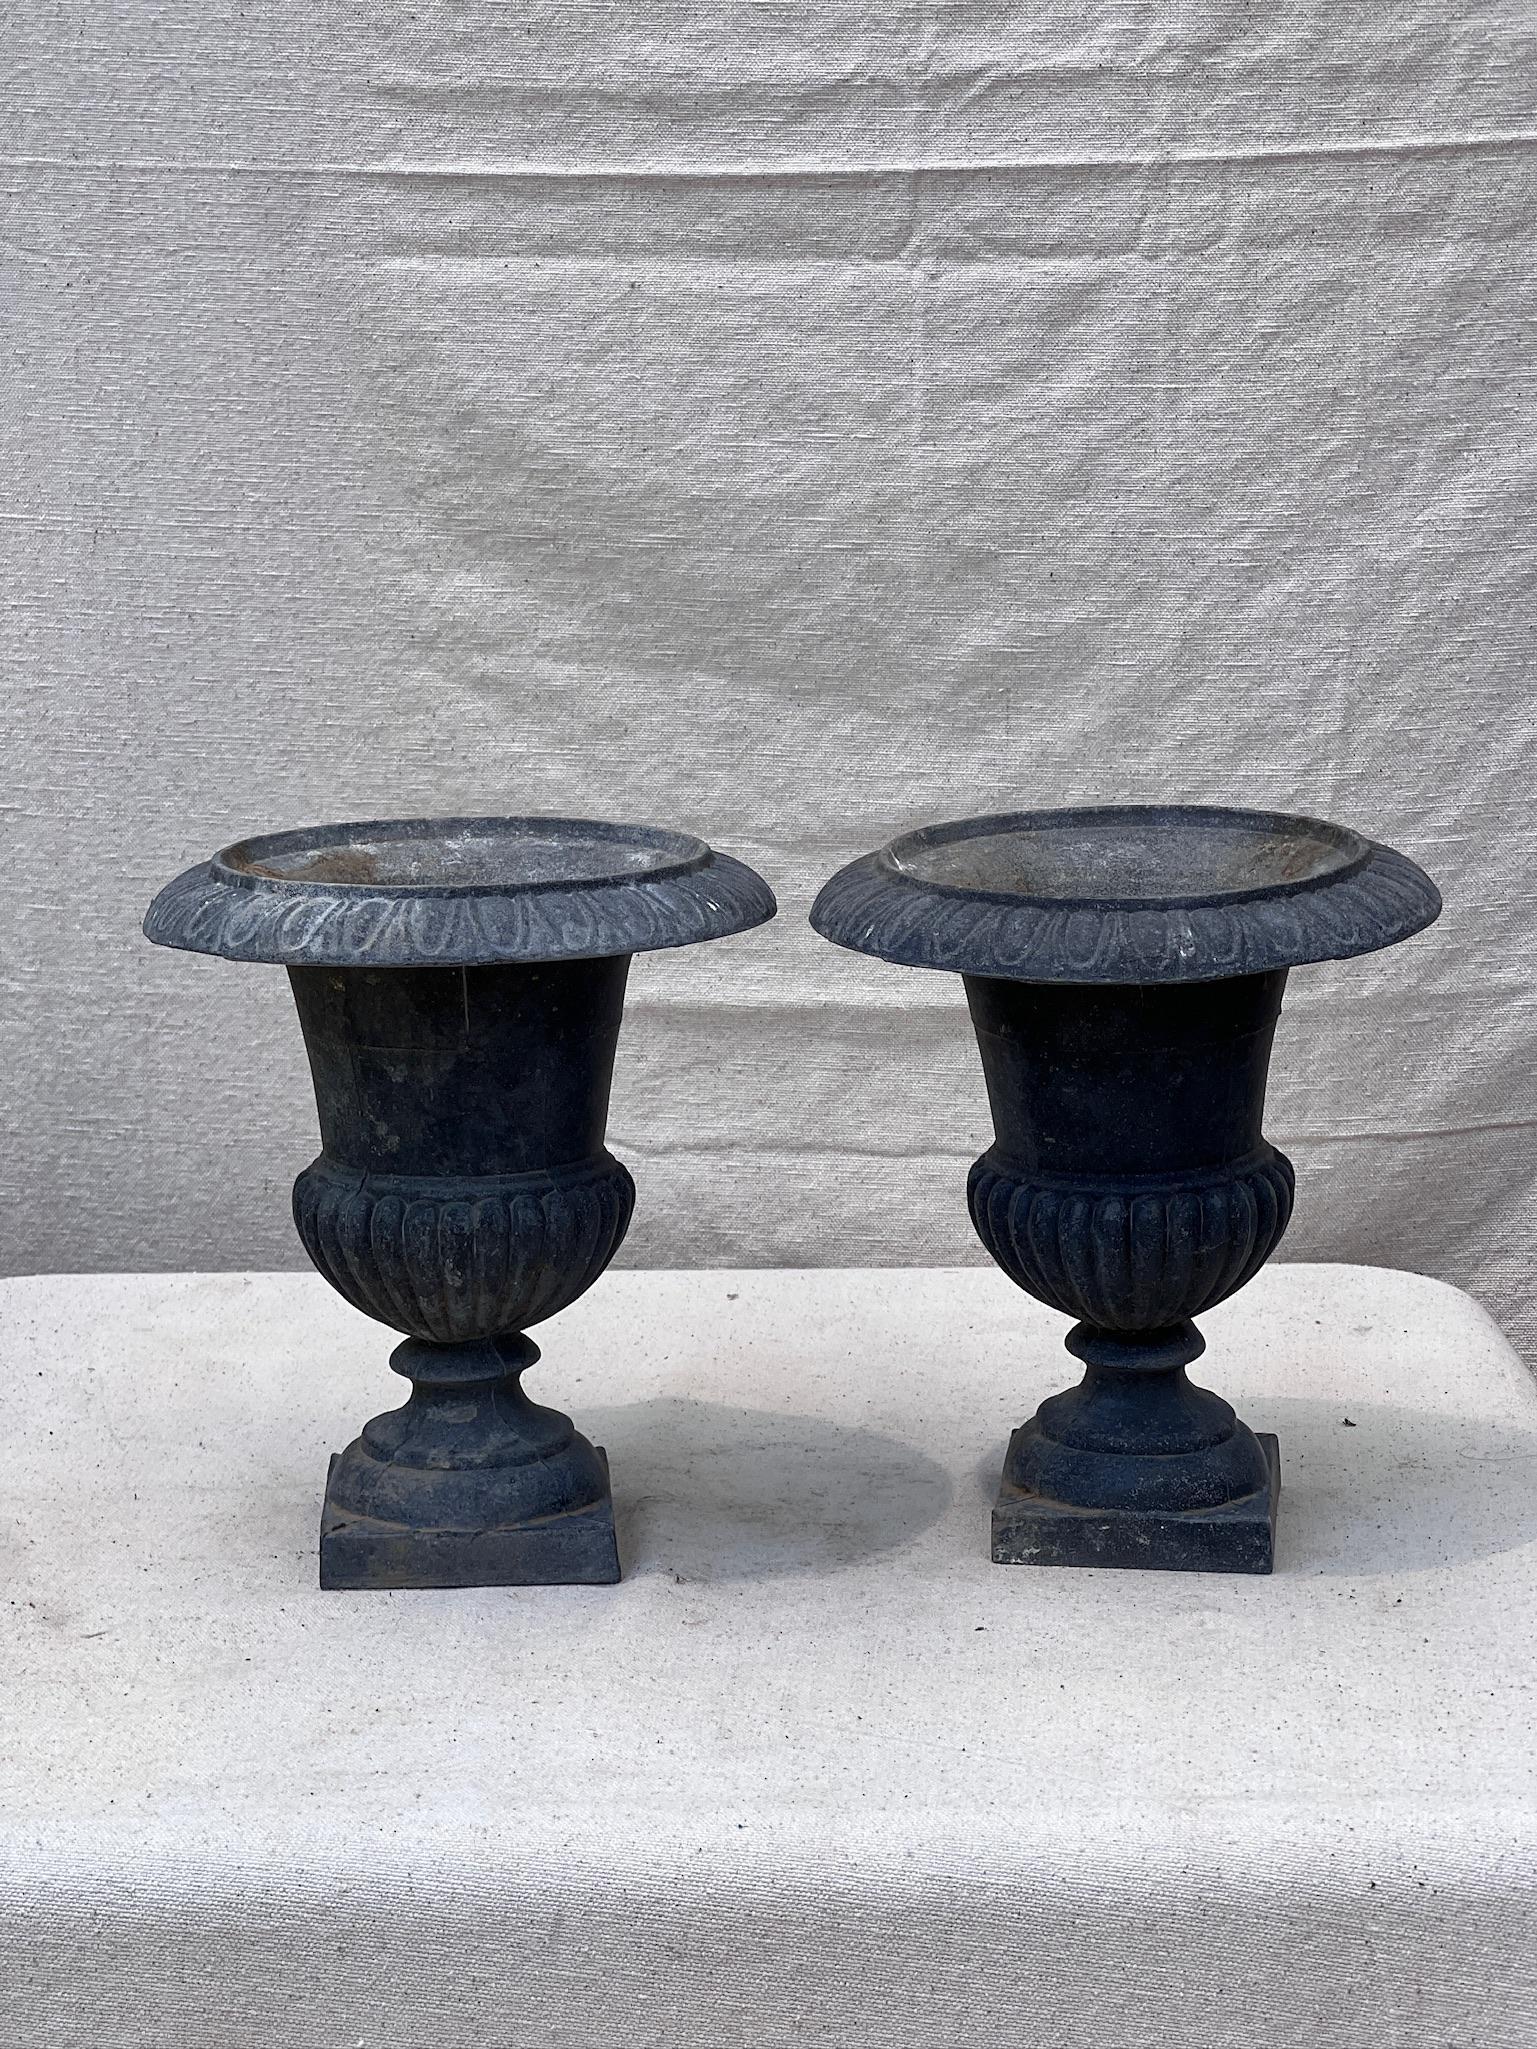 Die beiden eleganten antiken Urnen aus Gusseisen aus dem frühen 20. Jahrhundert stammen aus Frankreich und wurden im anspruchsvollen neoklassizistischen Stil entworfen. Die exquisit gearbeiteten gusseisernen Urnen oder Pflanzgefäße versprühen Charme